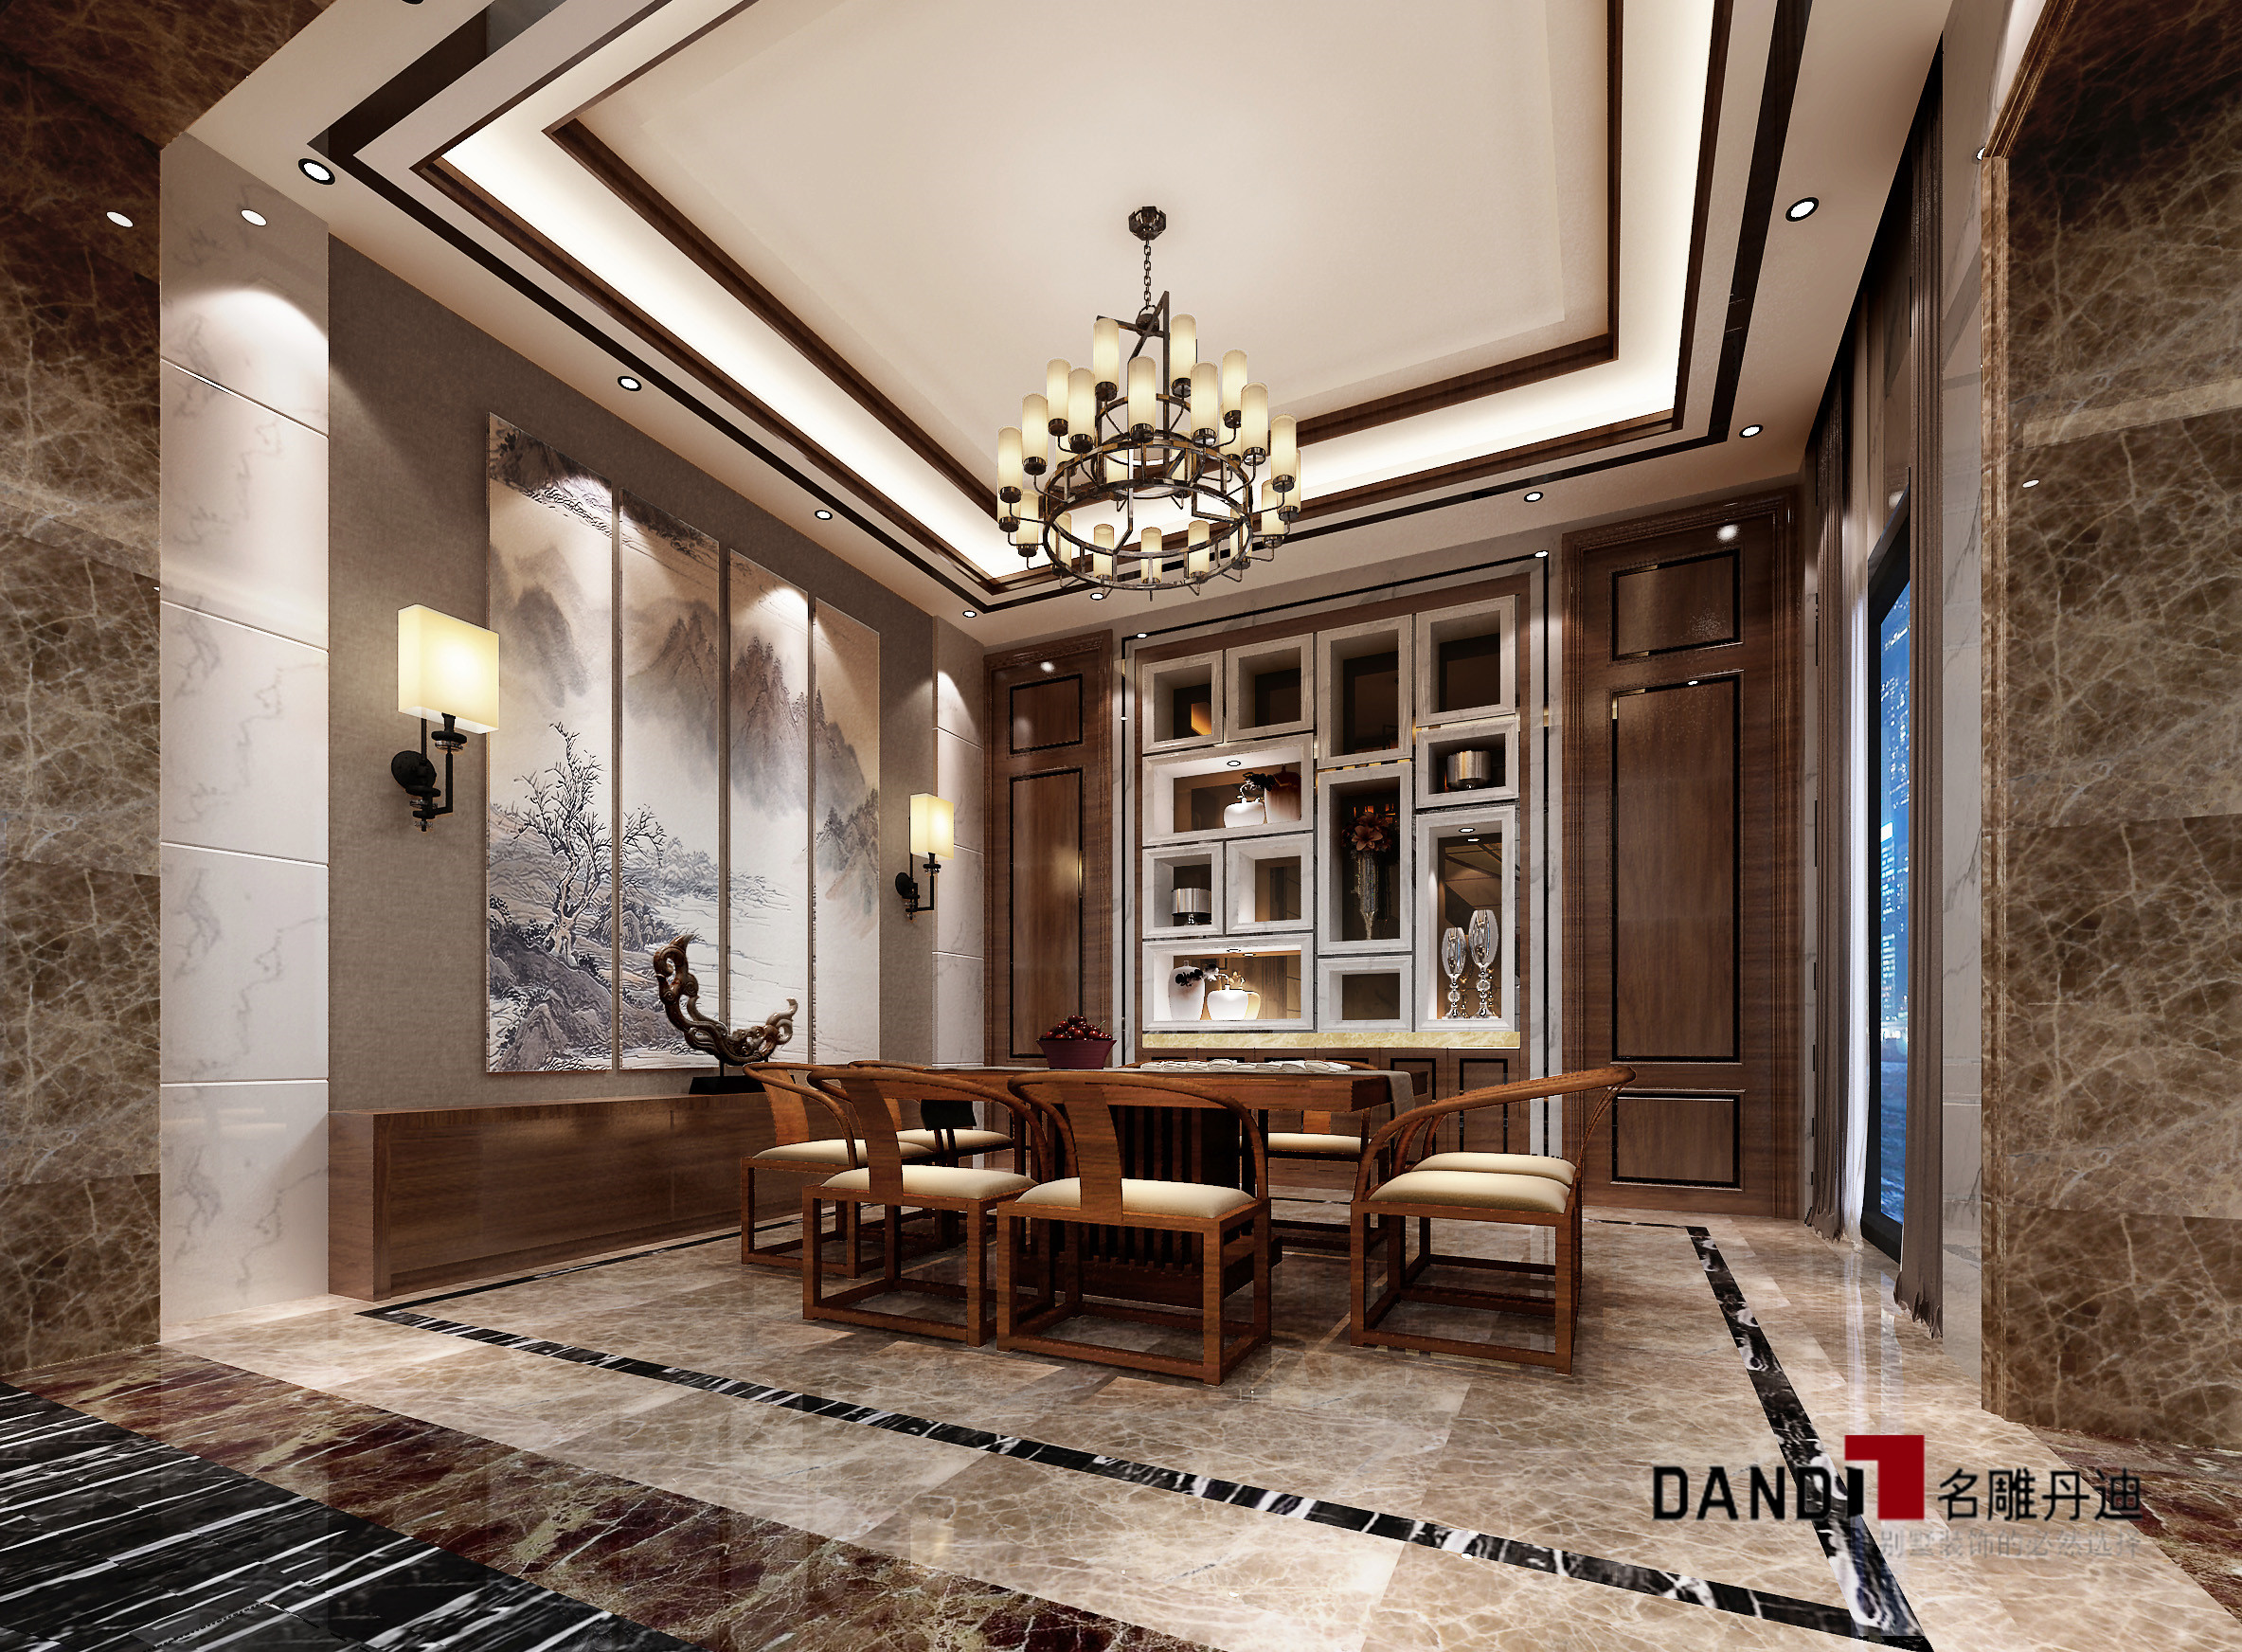 新中式别墅 沉静、淡定 丰富灵动 餐厅图片来自名雕丹迪在赋有东方文化内涵的分享